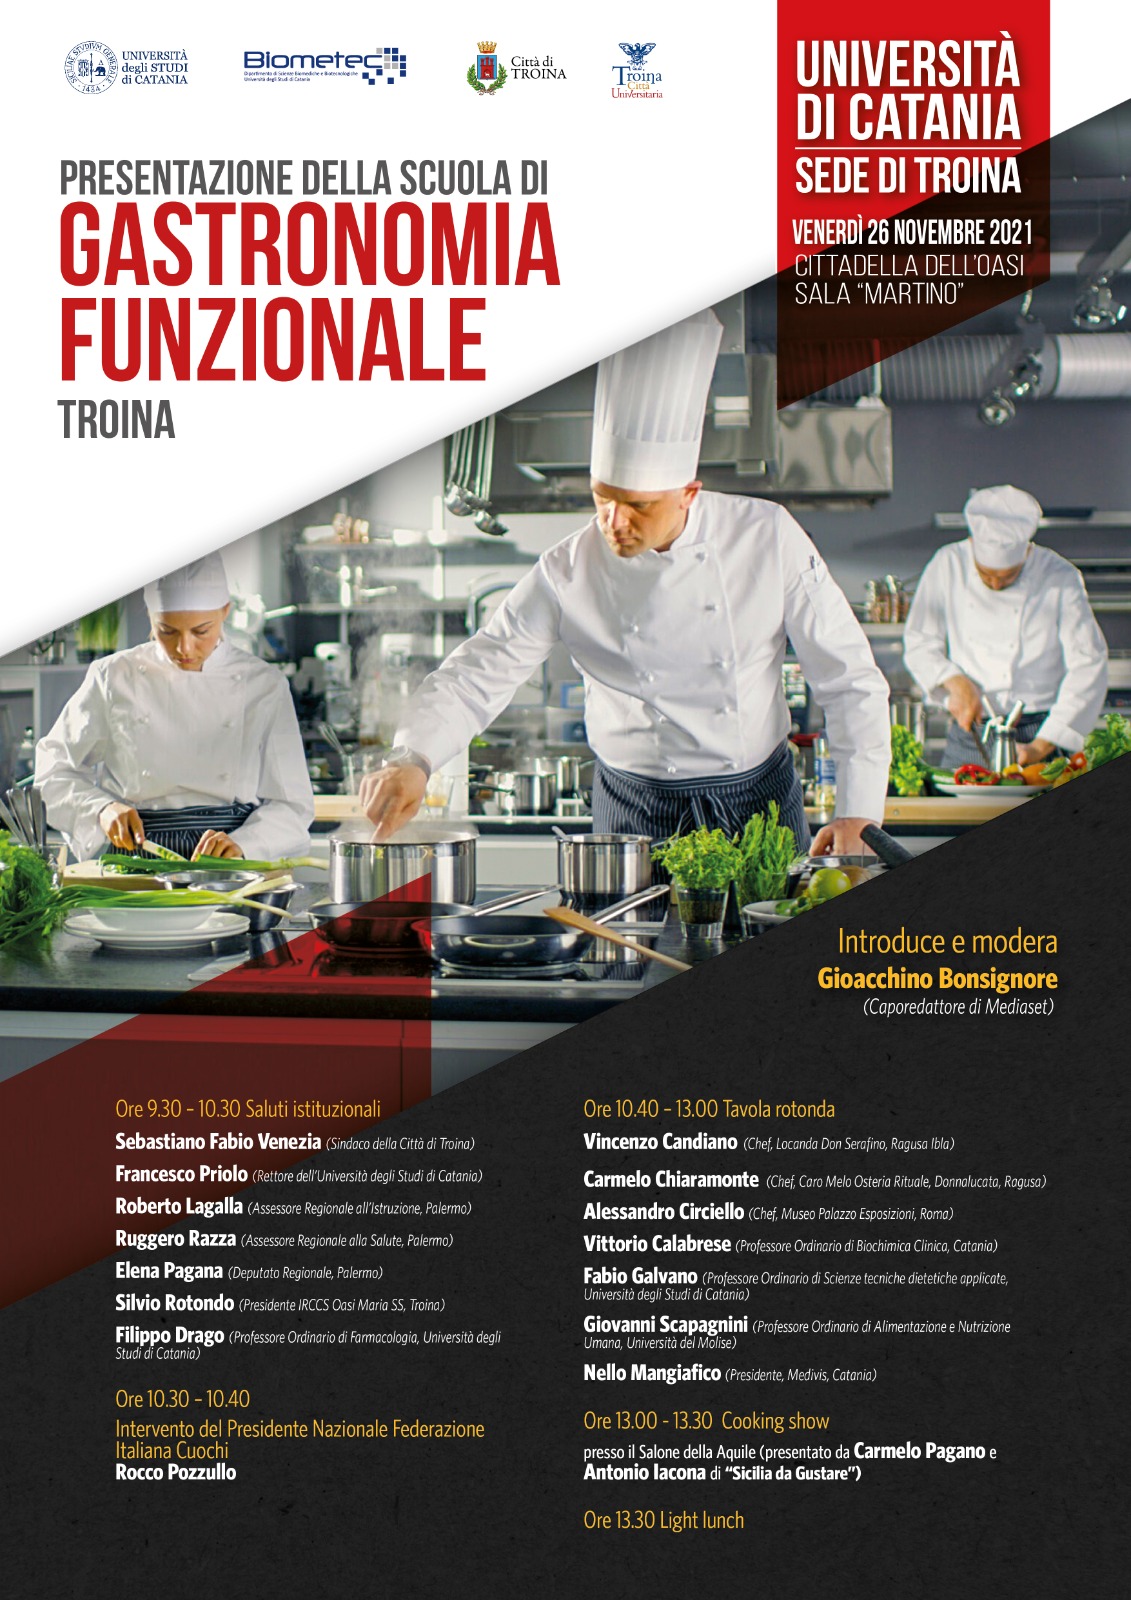 Nasce a Troina la scuola di gastronomia funzionale dell'Università di Catania 